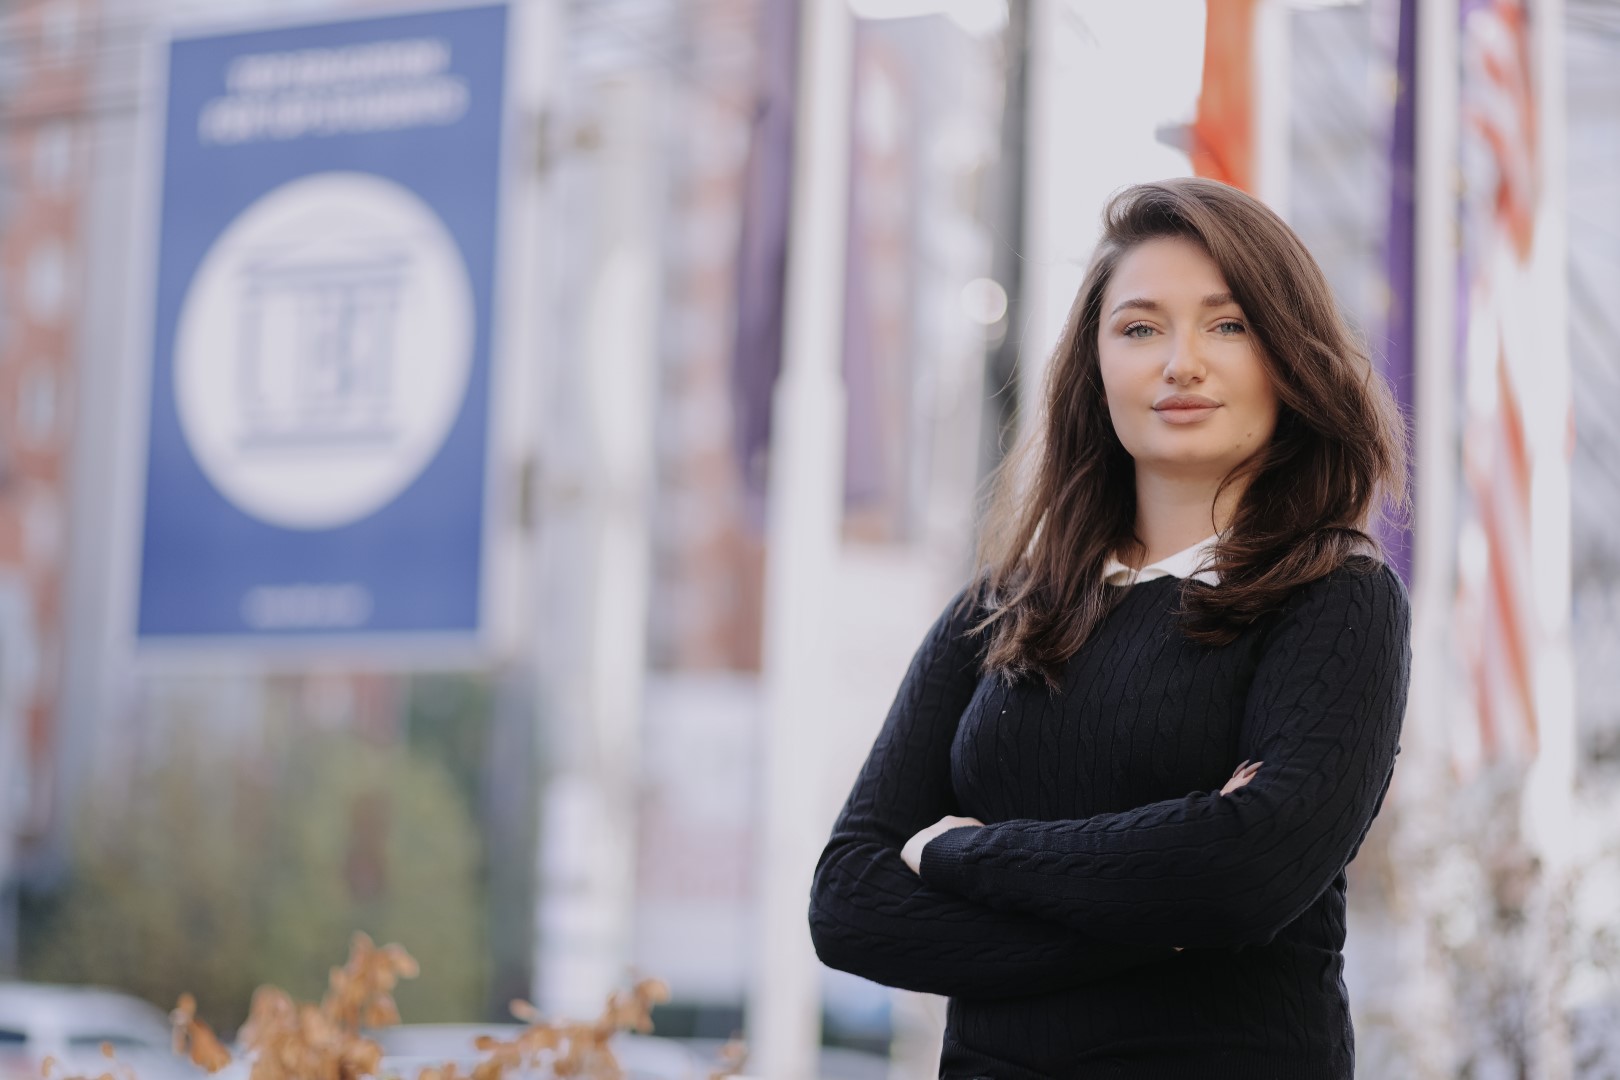 Studentja e Fakultetit Arkitekturë dhe Planifikim Hapësinor në UBT, Anita Ymeri është punësuar në cilësinë e asistentes dhe koordinatores së Fakultetit në UBT